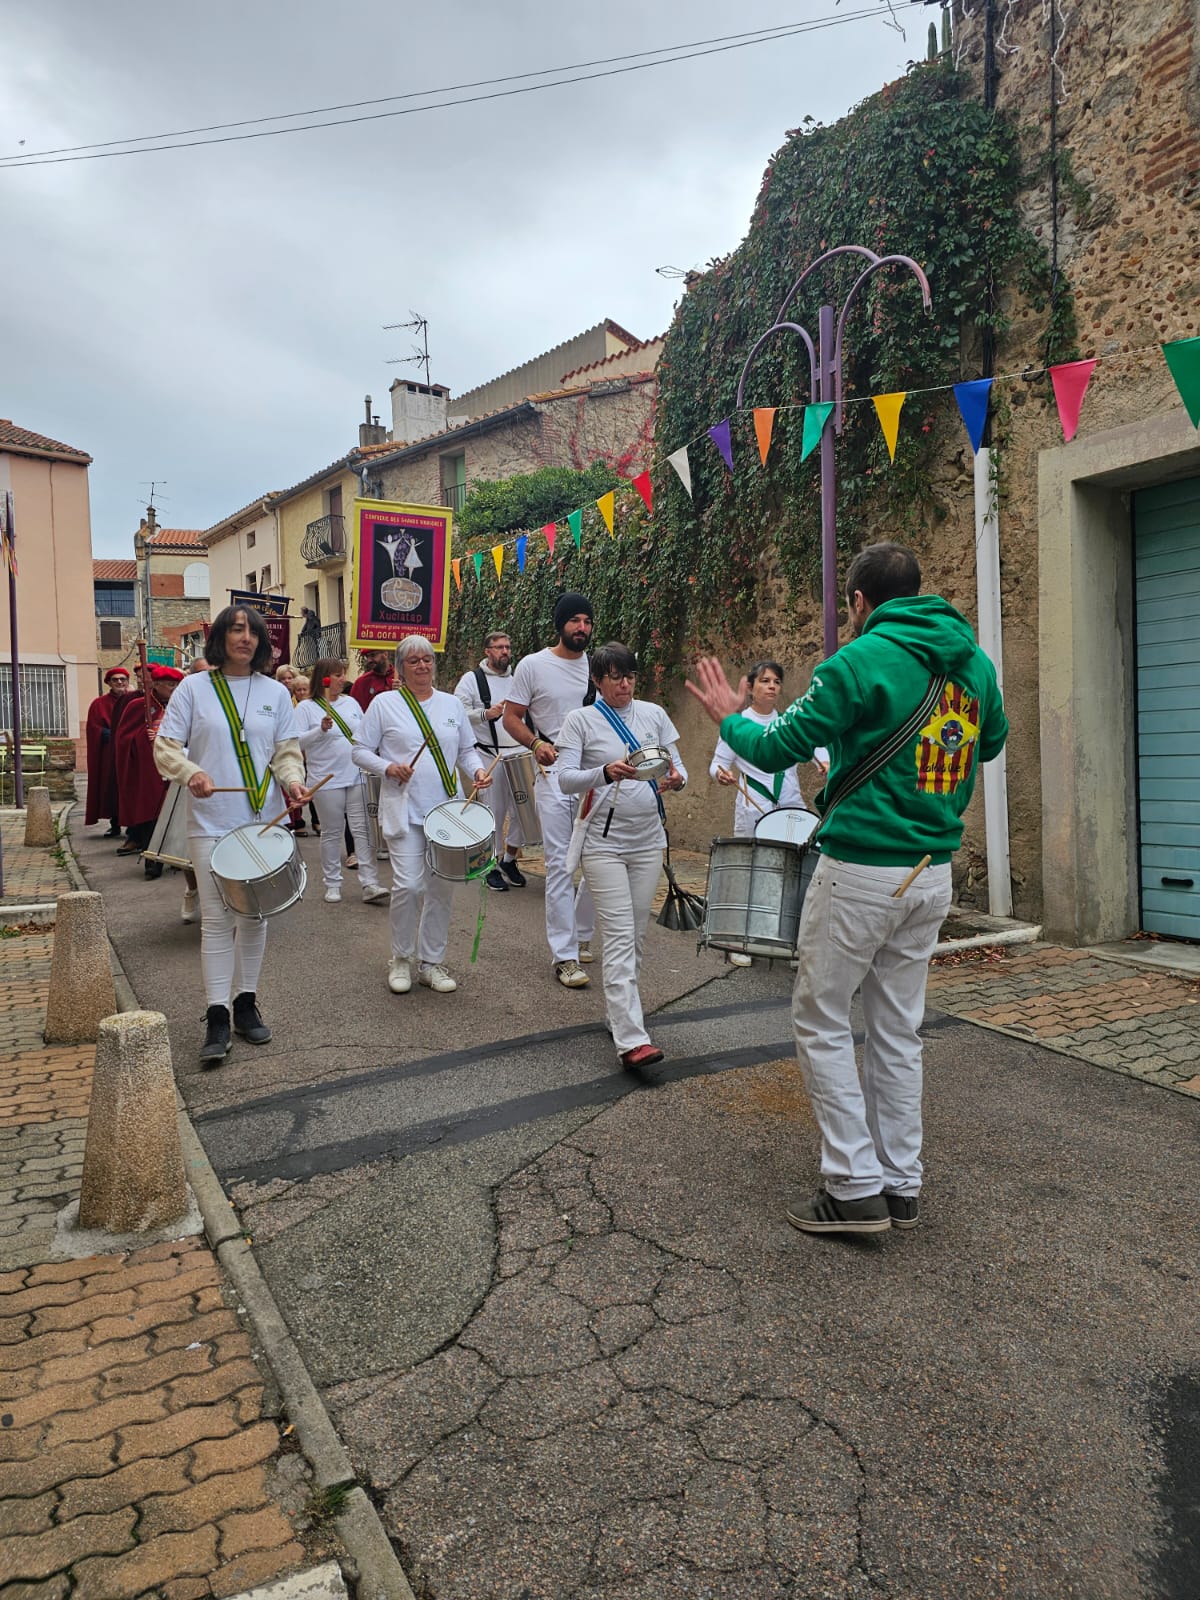 La Confrérie des Vinaigre Xuclata à fait appel à Catala que ta pour animer son défiler dans les rues de St Génis des fontaines ! 